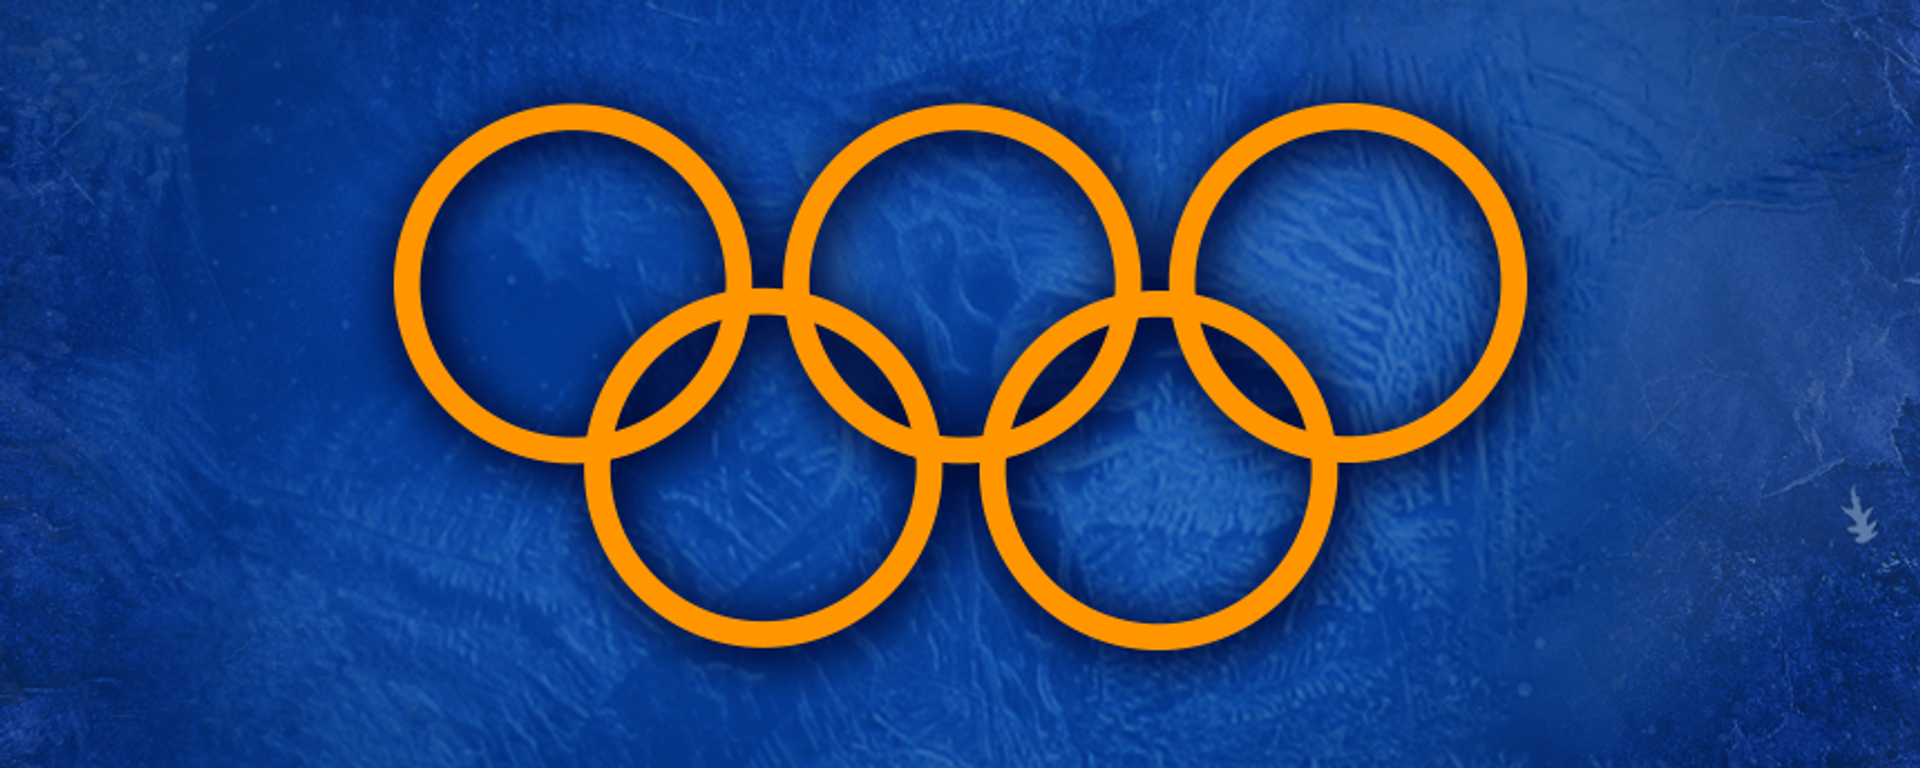 Соревновательная программа молдавских олимпийцев в Пекине - Sputnik Молдова, 1920, 02.02.2022